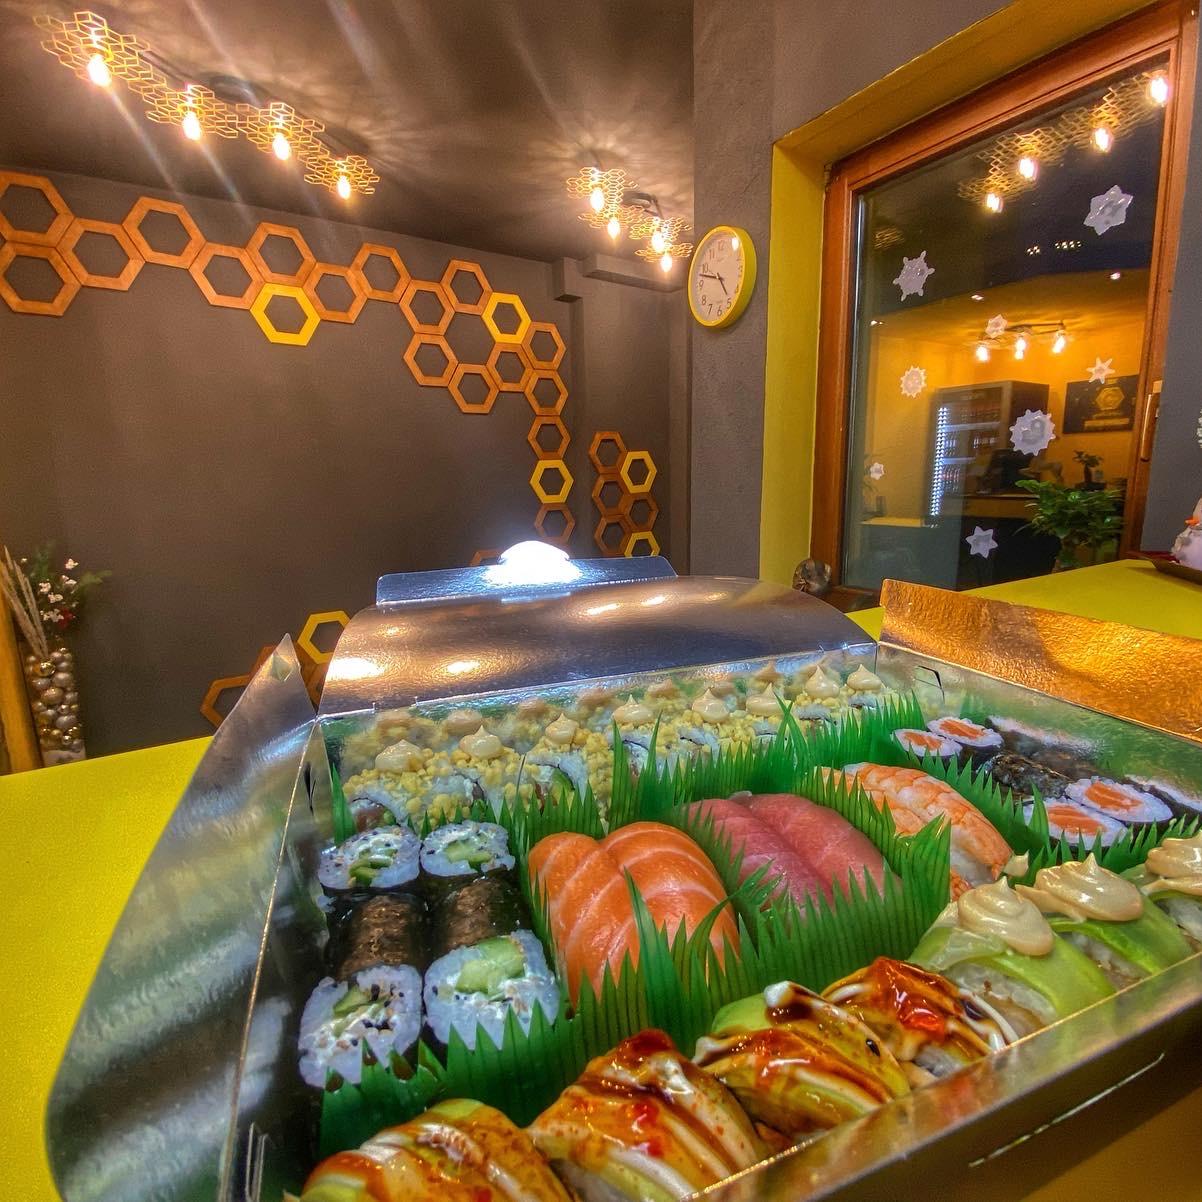 Restaurant "Fusion Sushi King" in Lauda-Königshofen